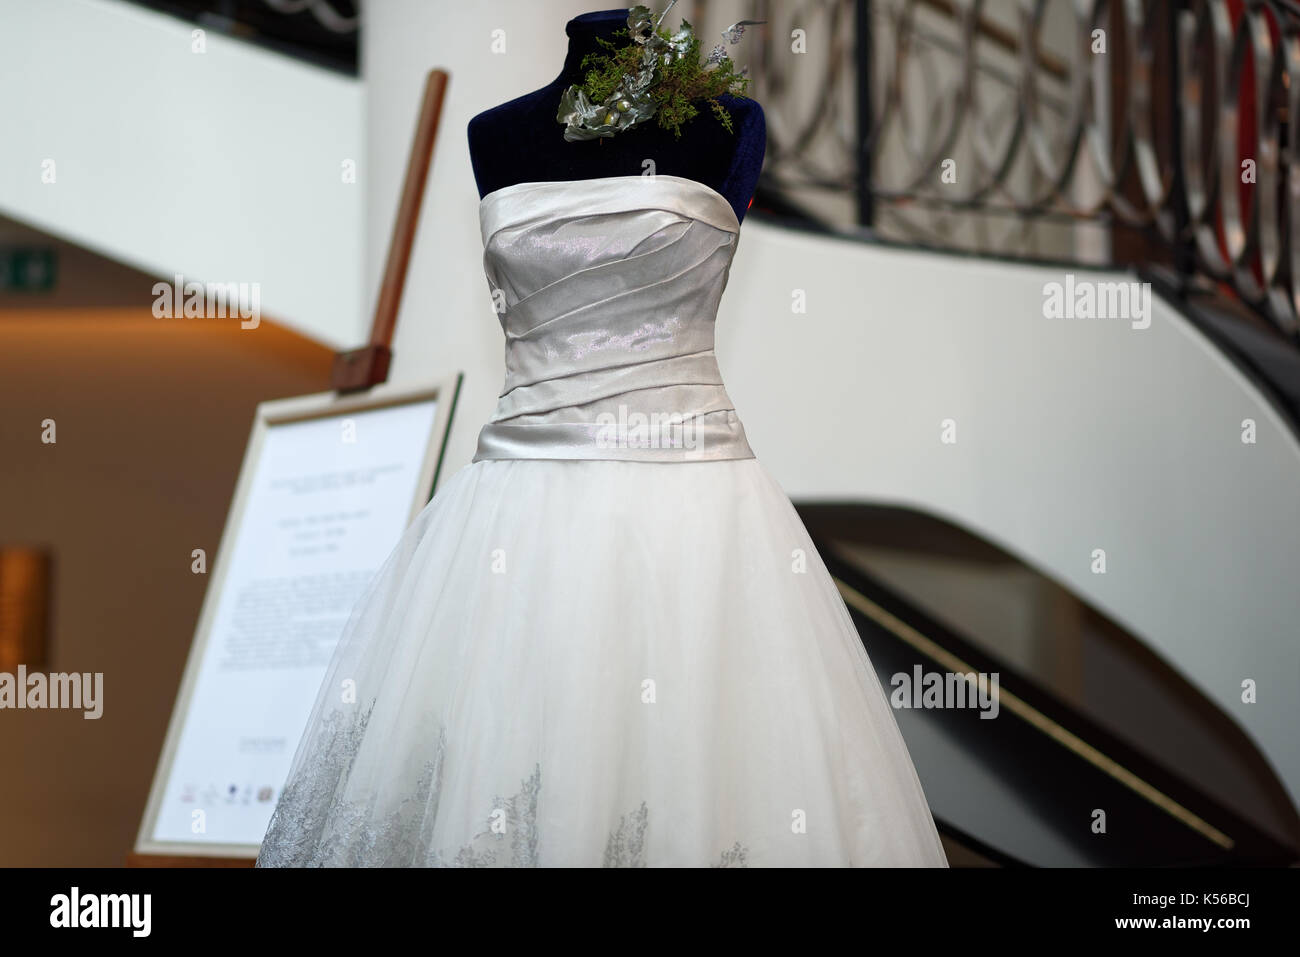 Saint-pétersbourg, Russie - 9 octobre, 2015 : robe de mariage platine conçu par Mauro Adami exposées dans l'hôtel Corinthia. La robe d'une valeur de 400 000 wil Banque D'Images